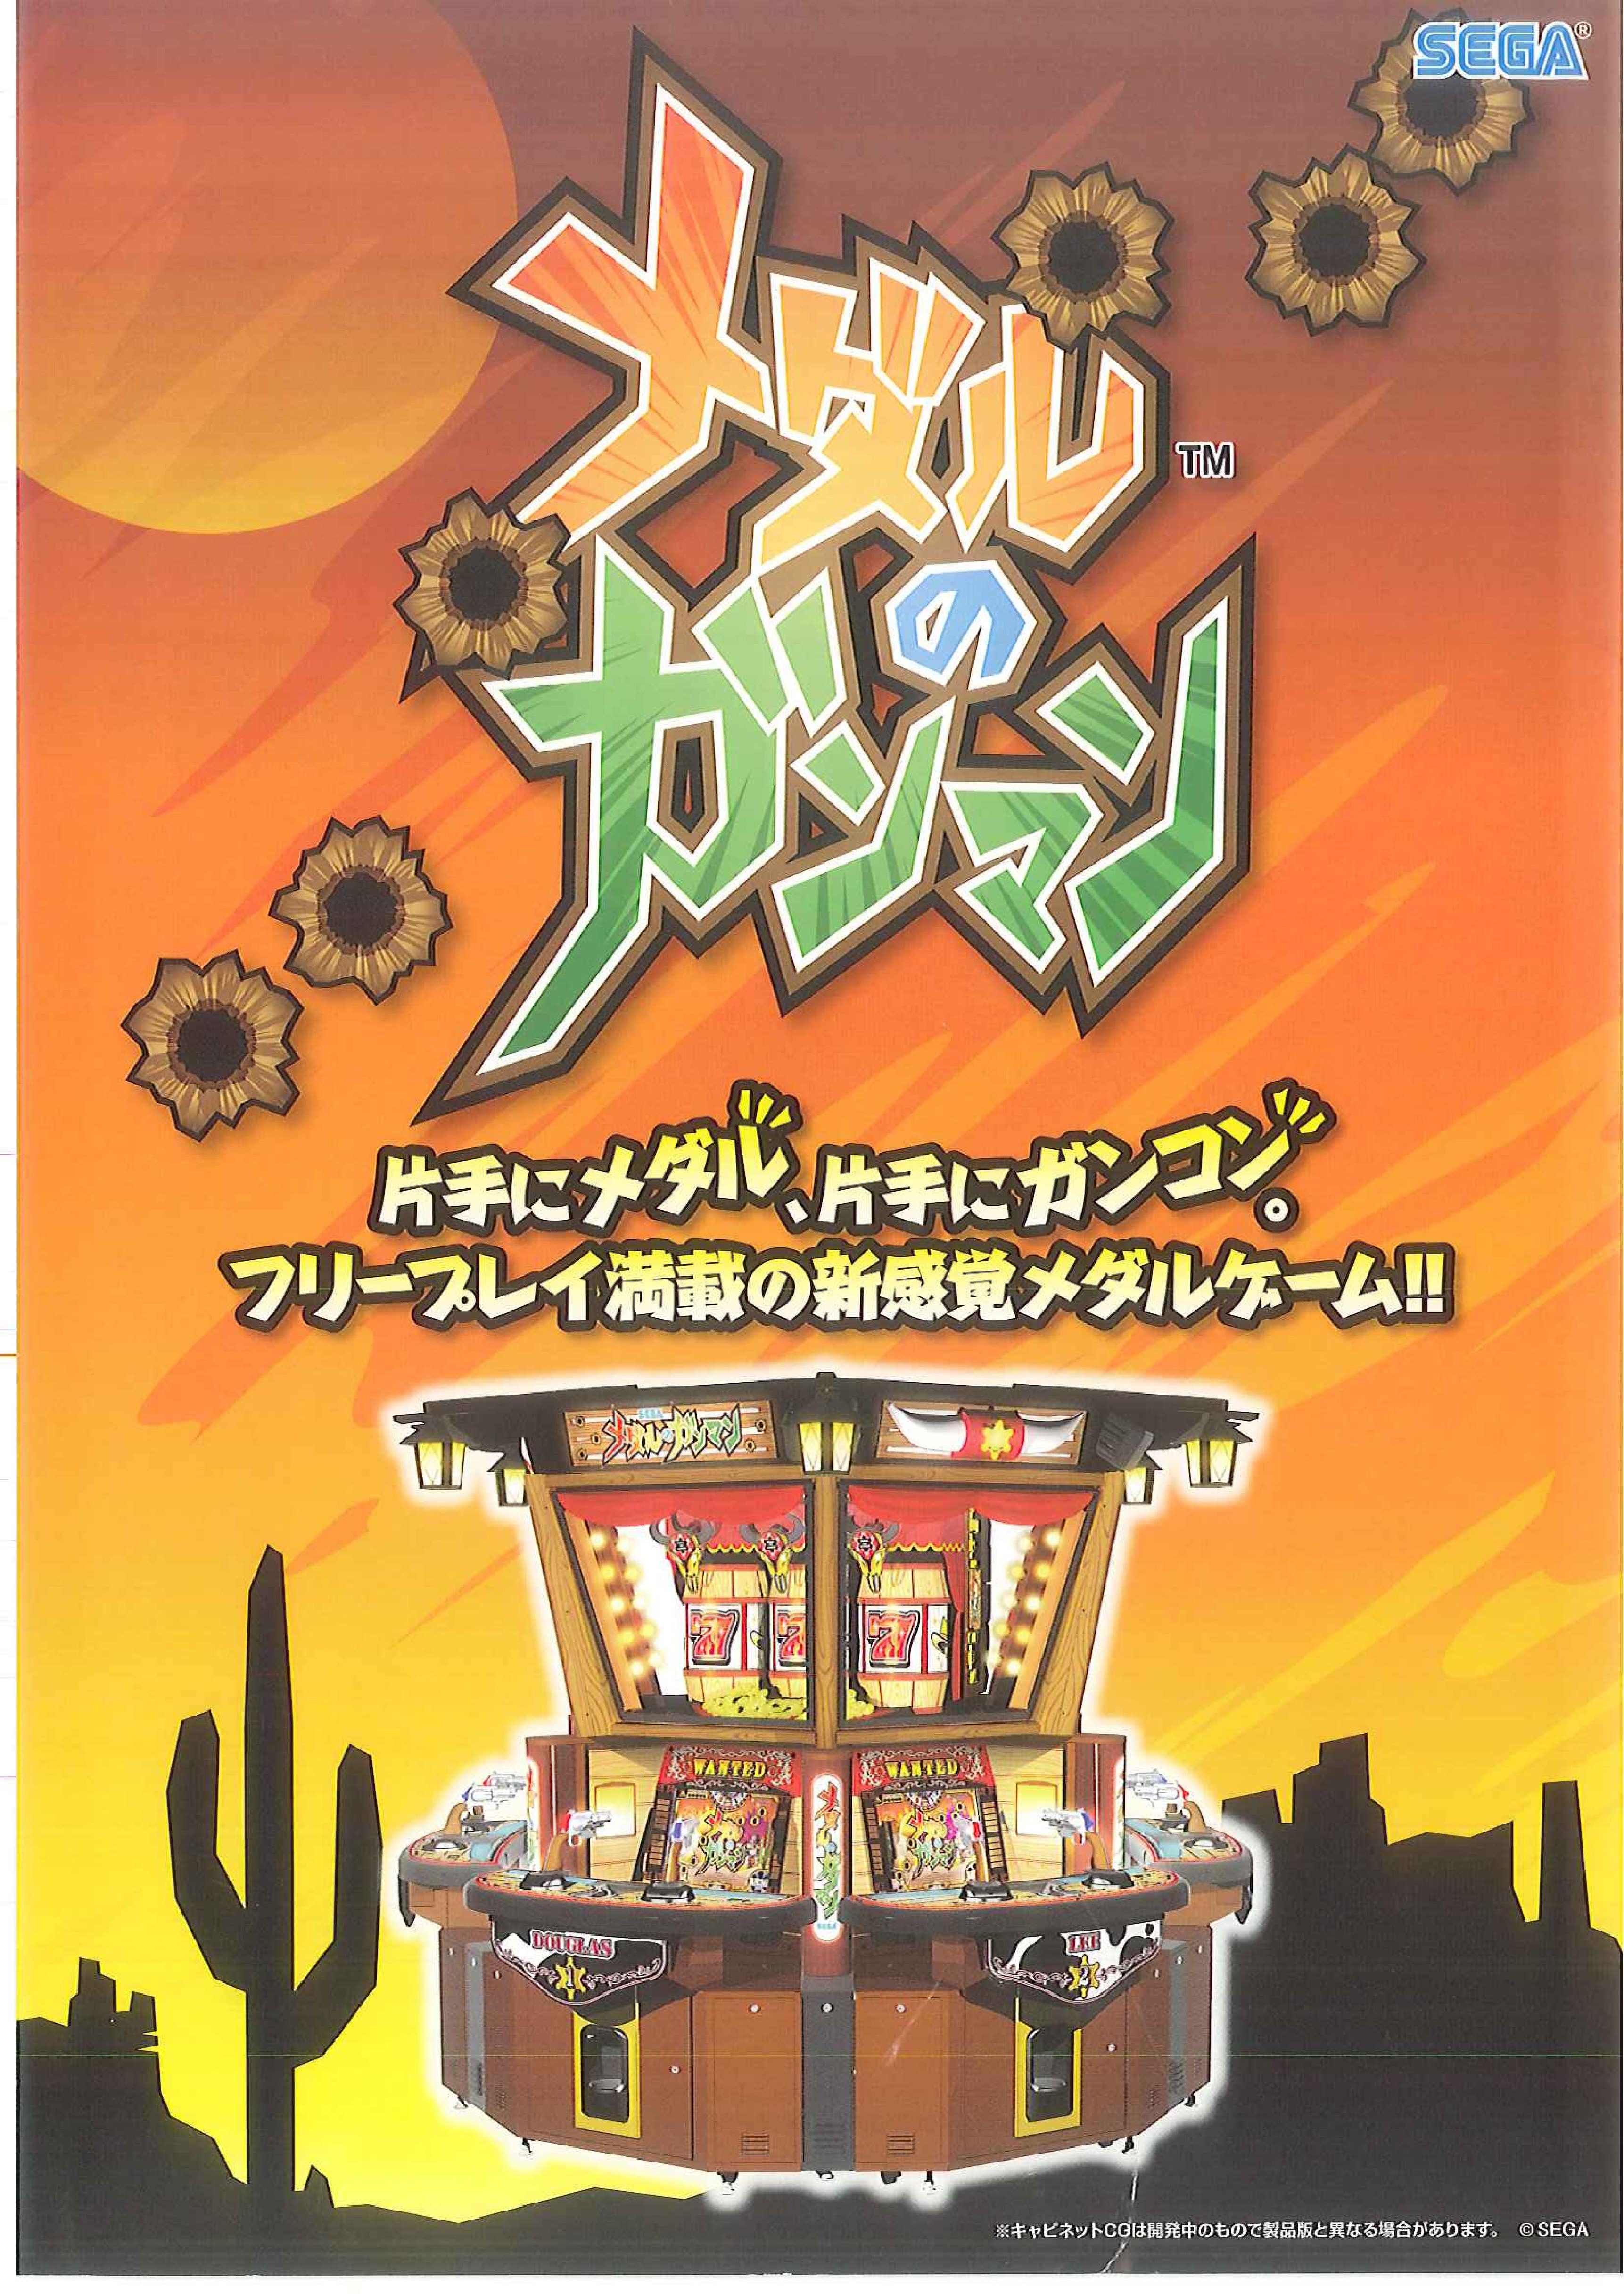 MedalnoGunman Arcade JP Flyer.pdf